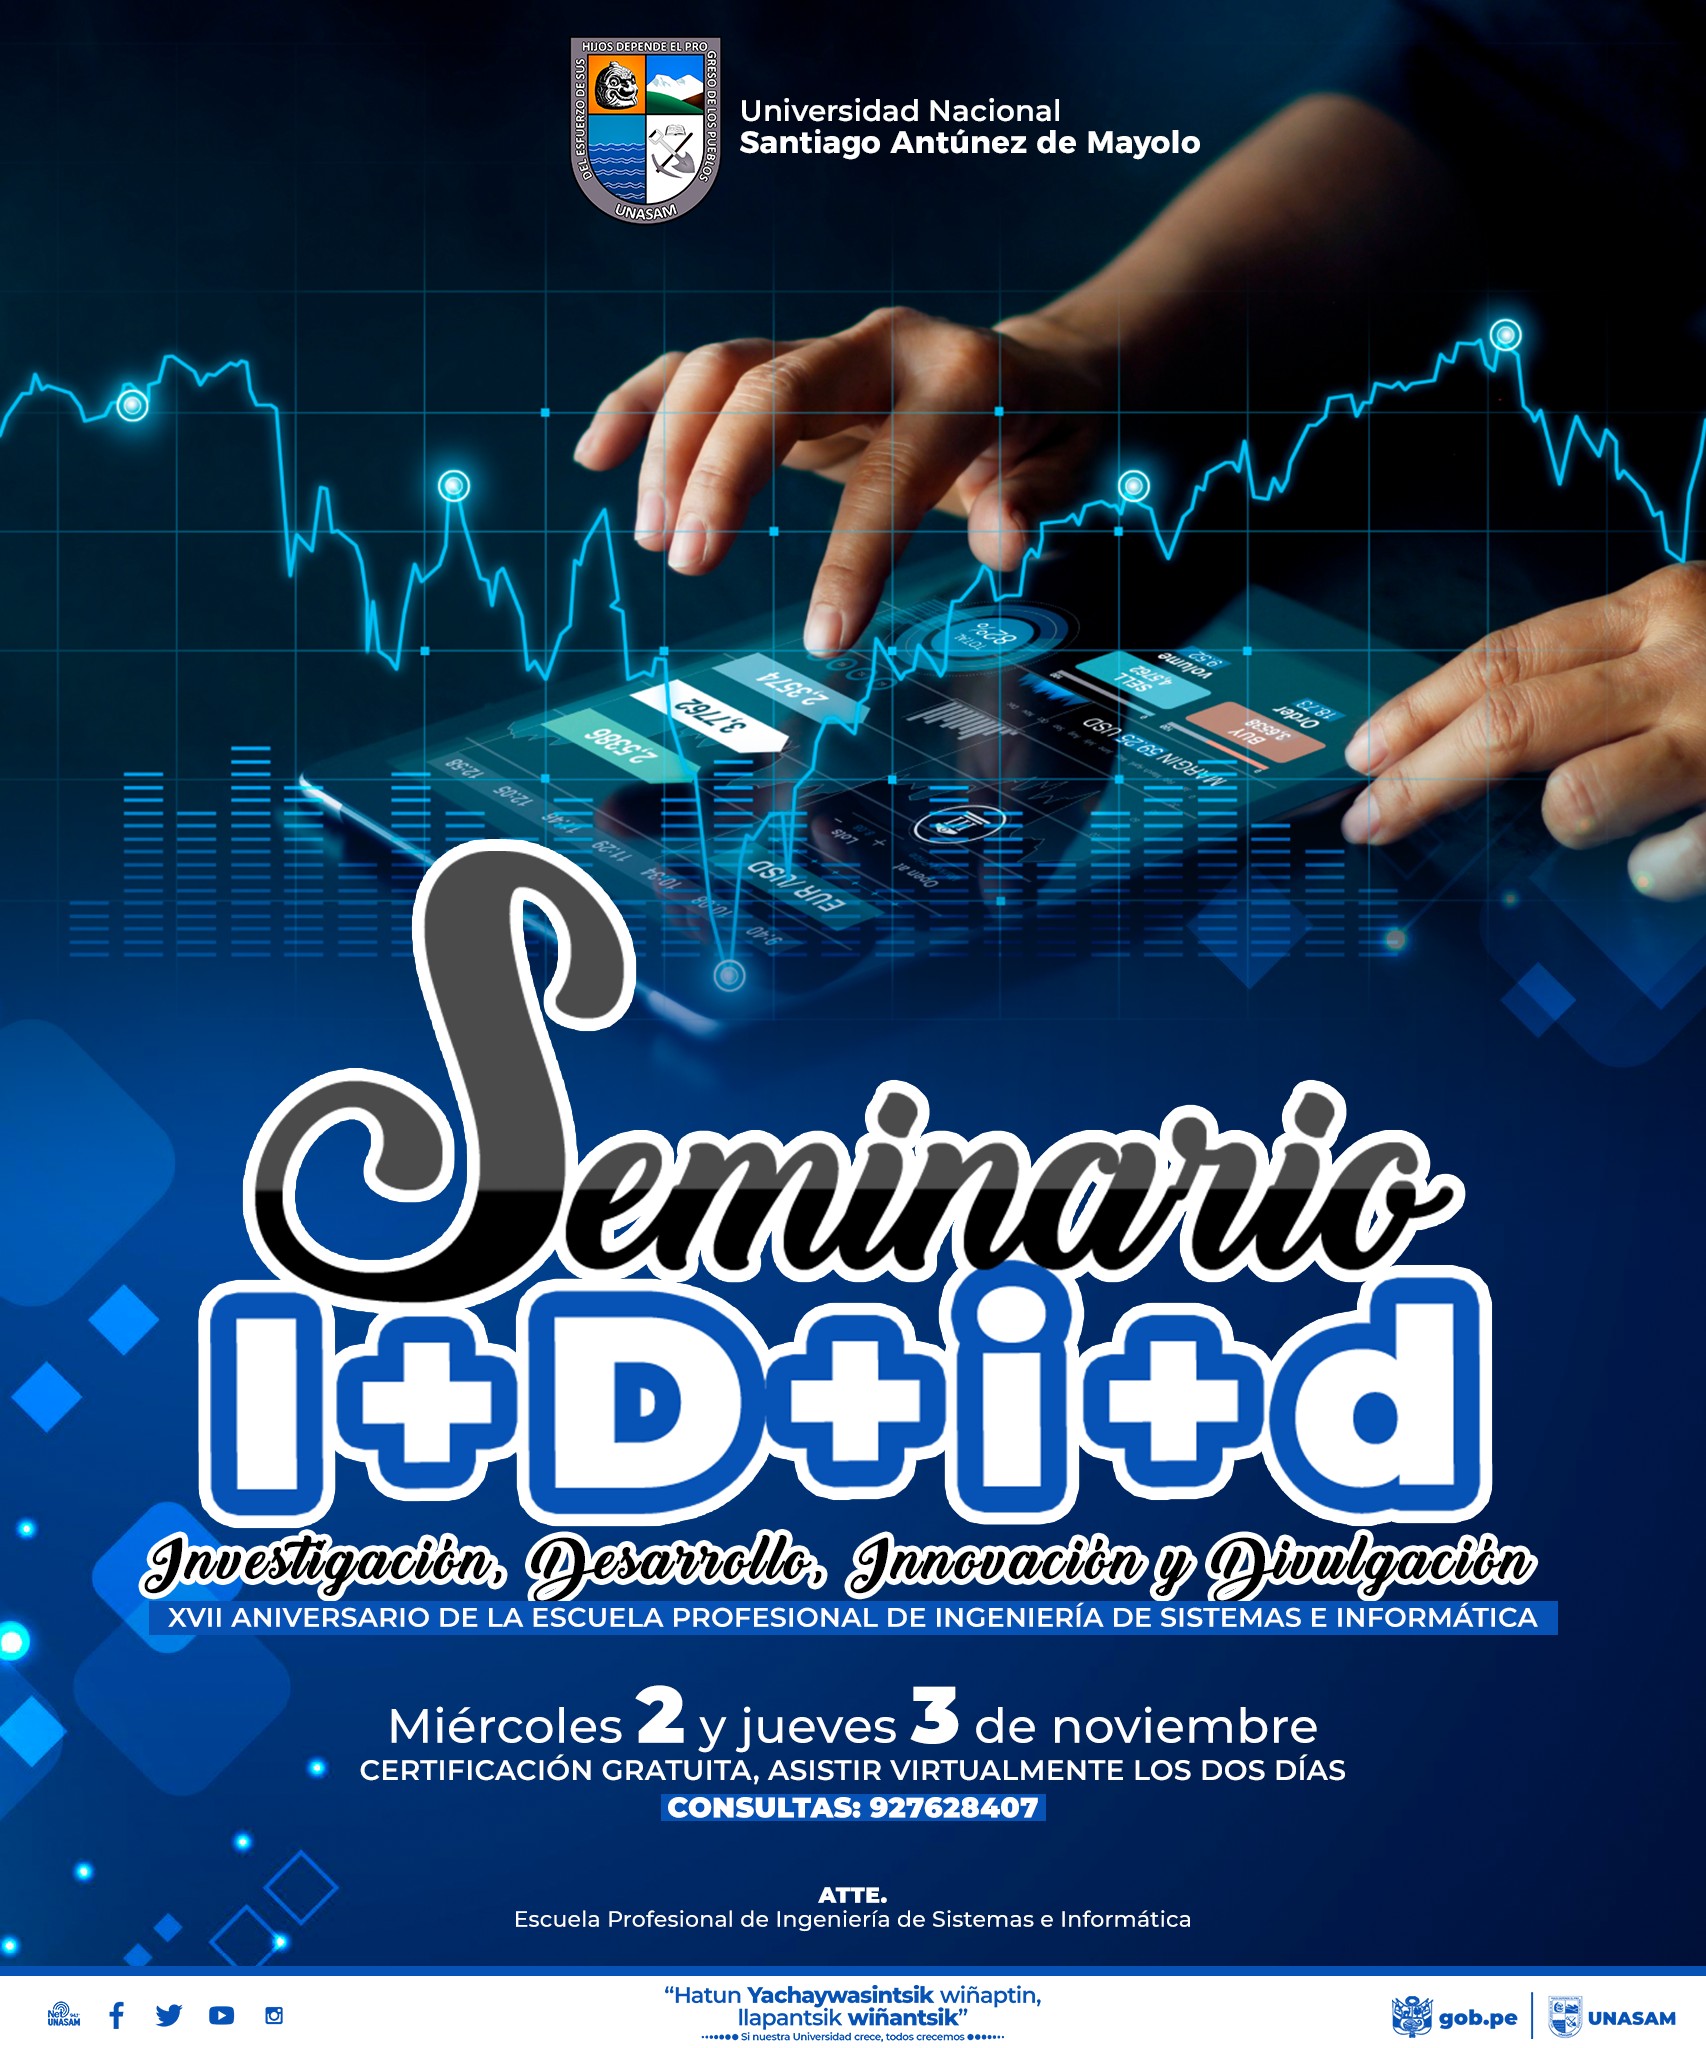  																Seminario I+D+i+d (Investigación+ innovación+ divulgación)
																